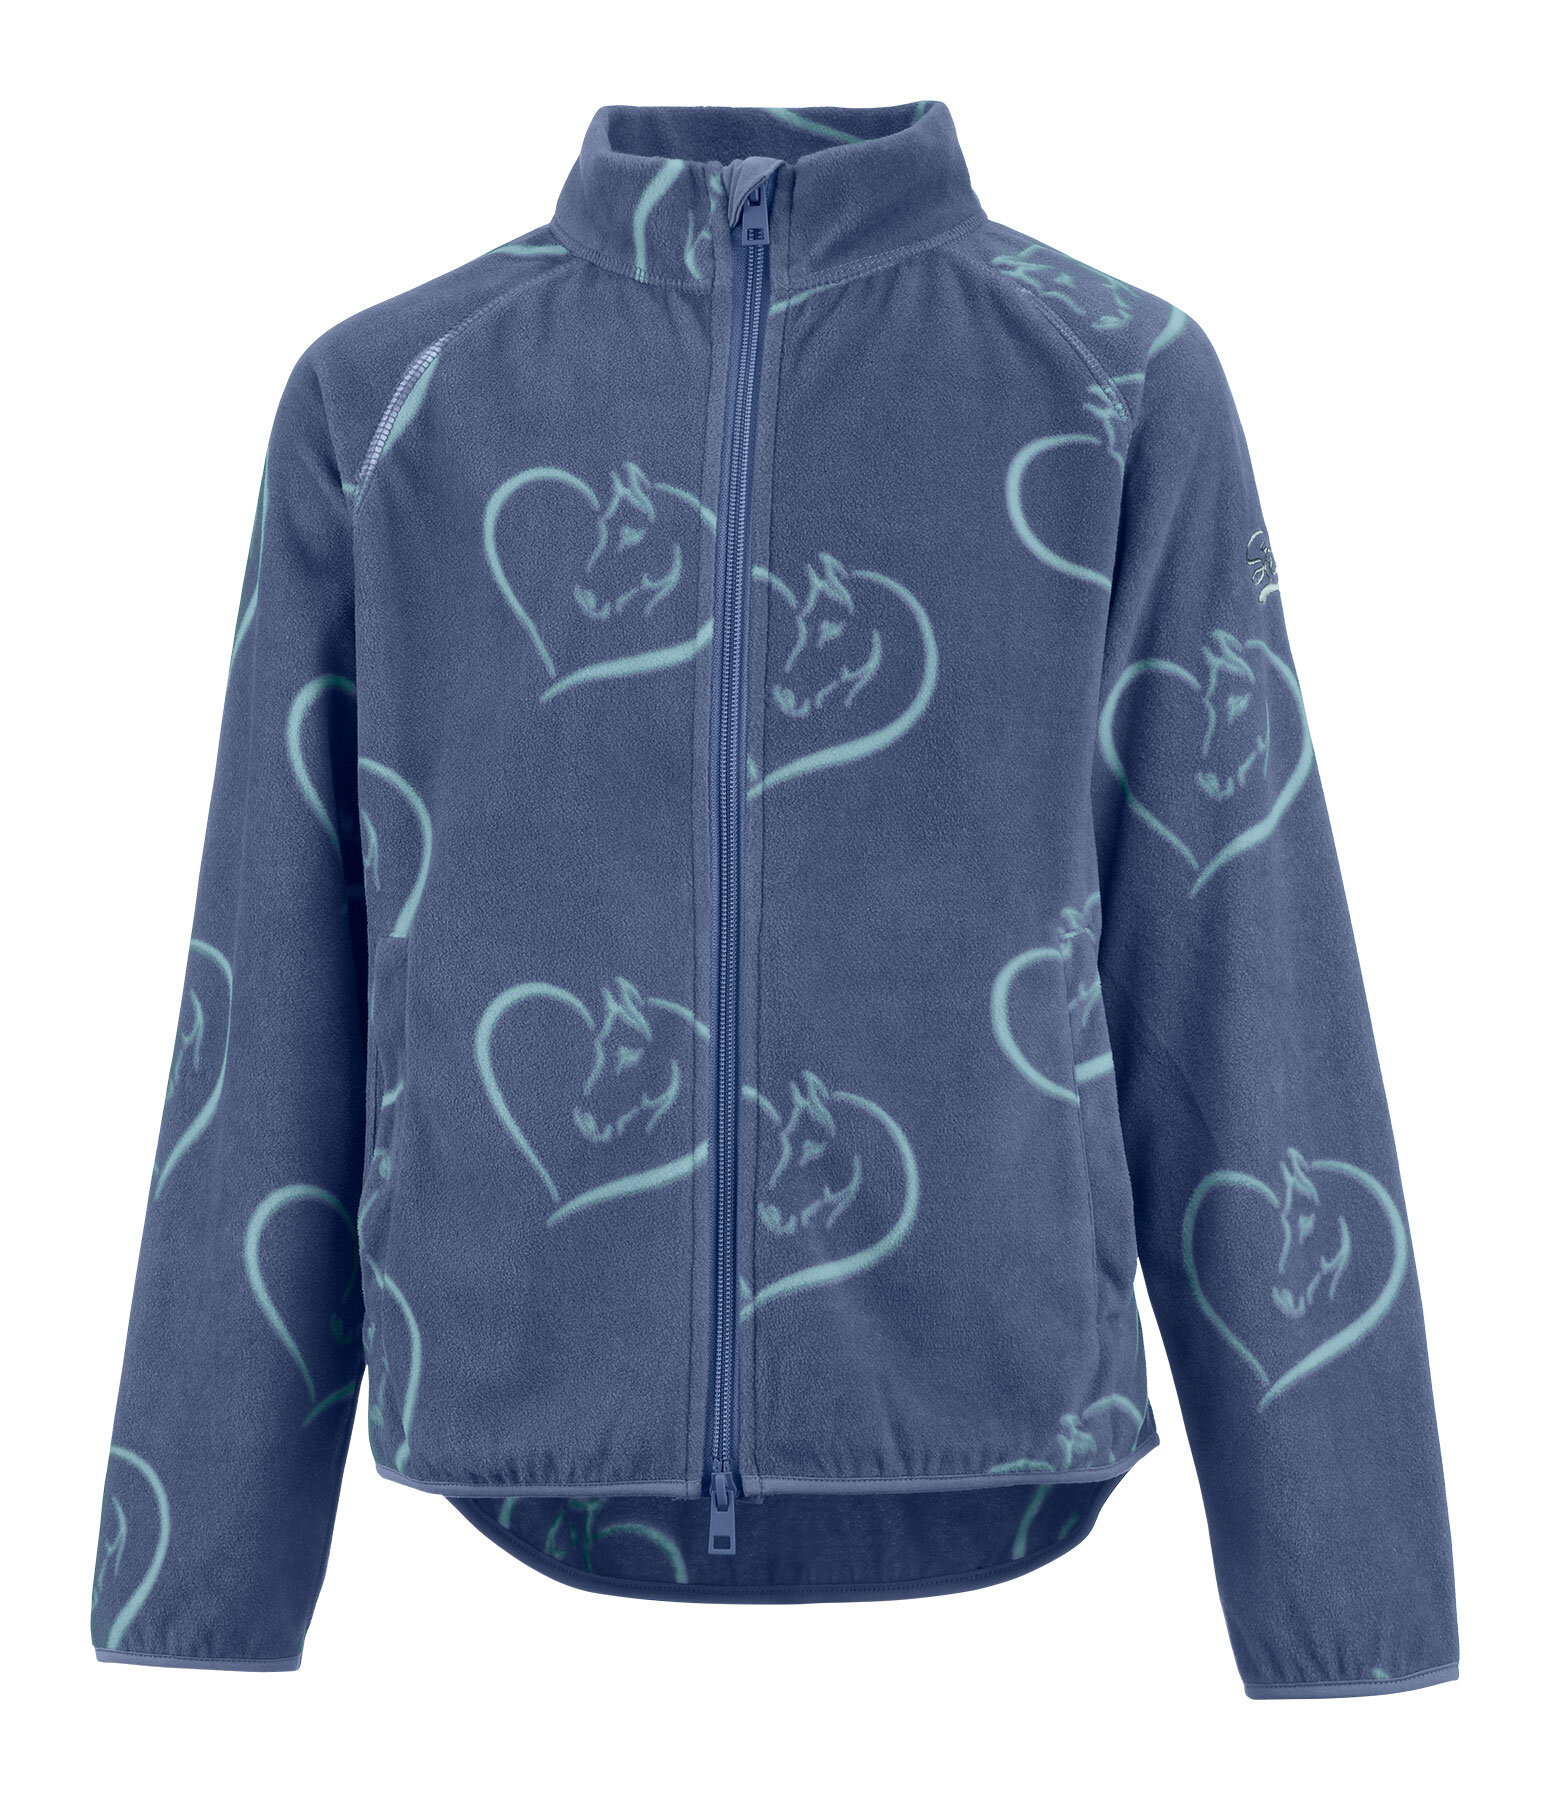 Children's Fleece Jacket Hearty